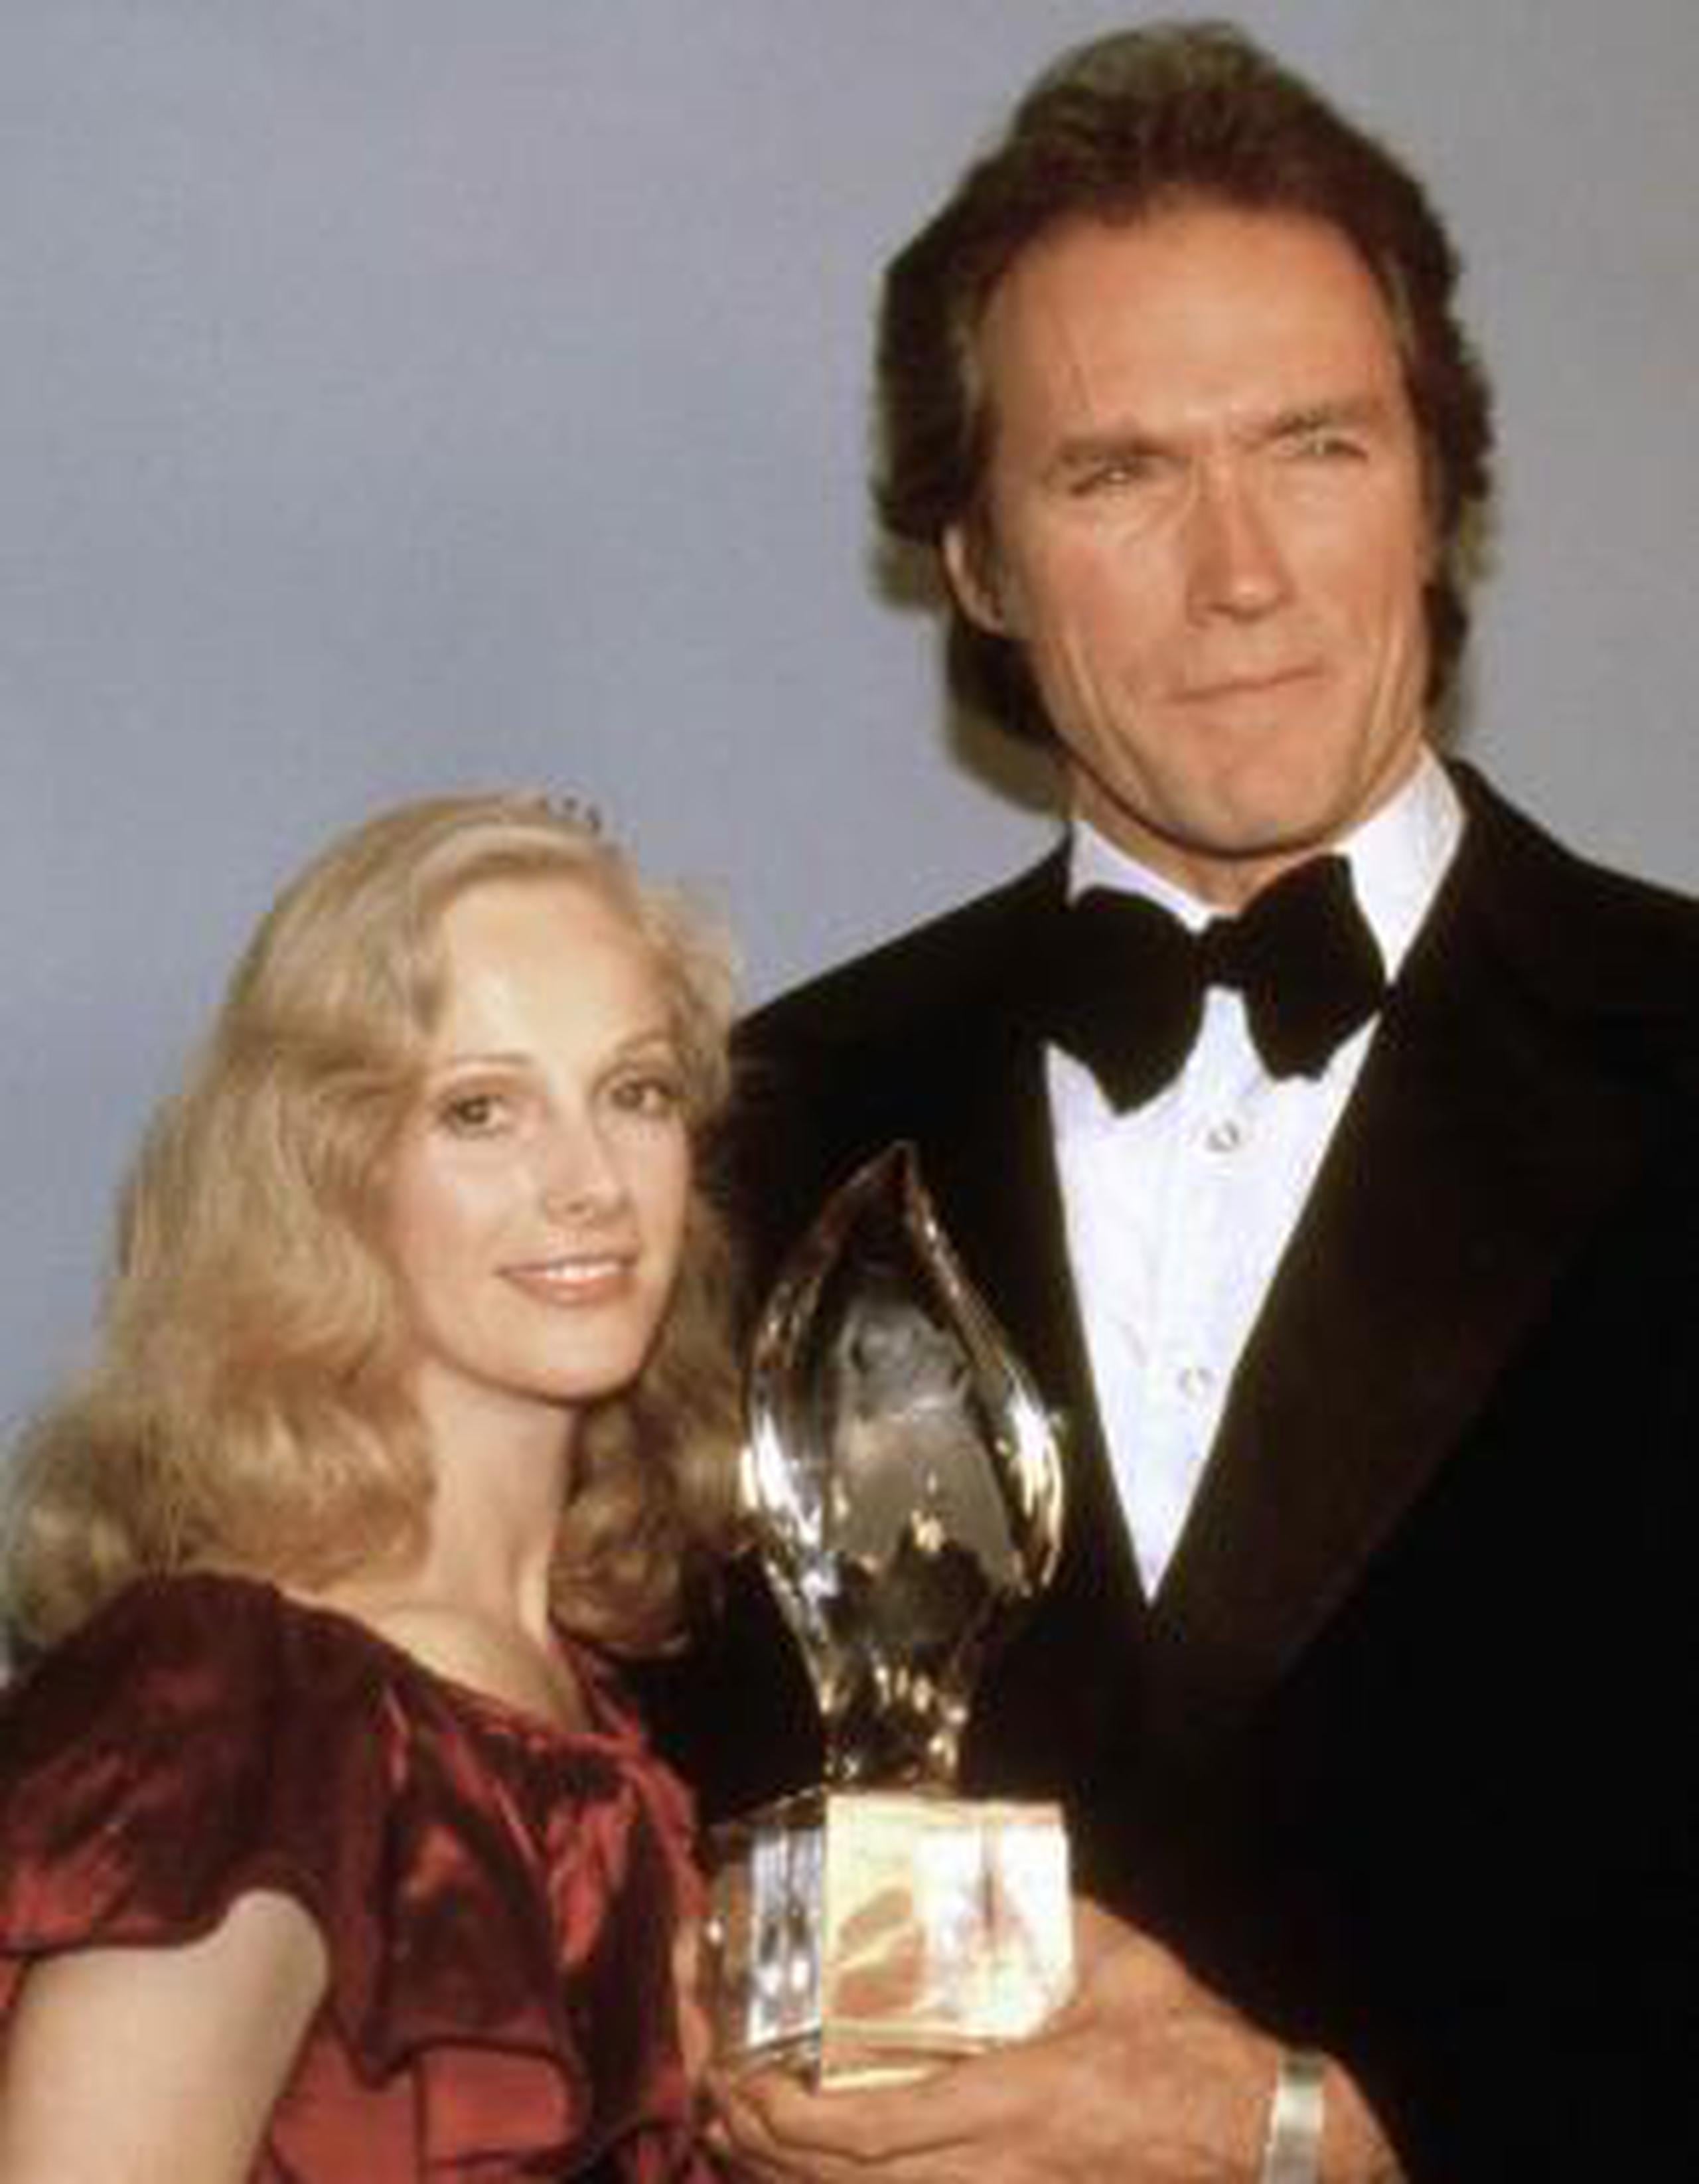 Sondra Locke y Clint Eastwood en los People's Choice Award, el 5 de marzo de 1981 en Los Ángeles, California. (AP)